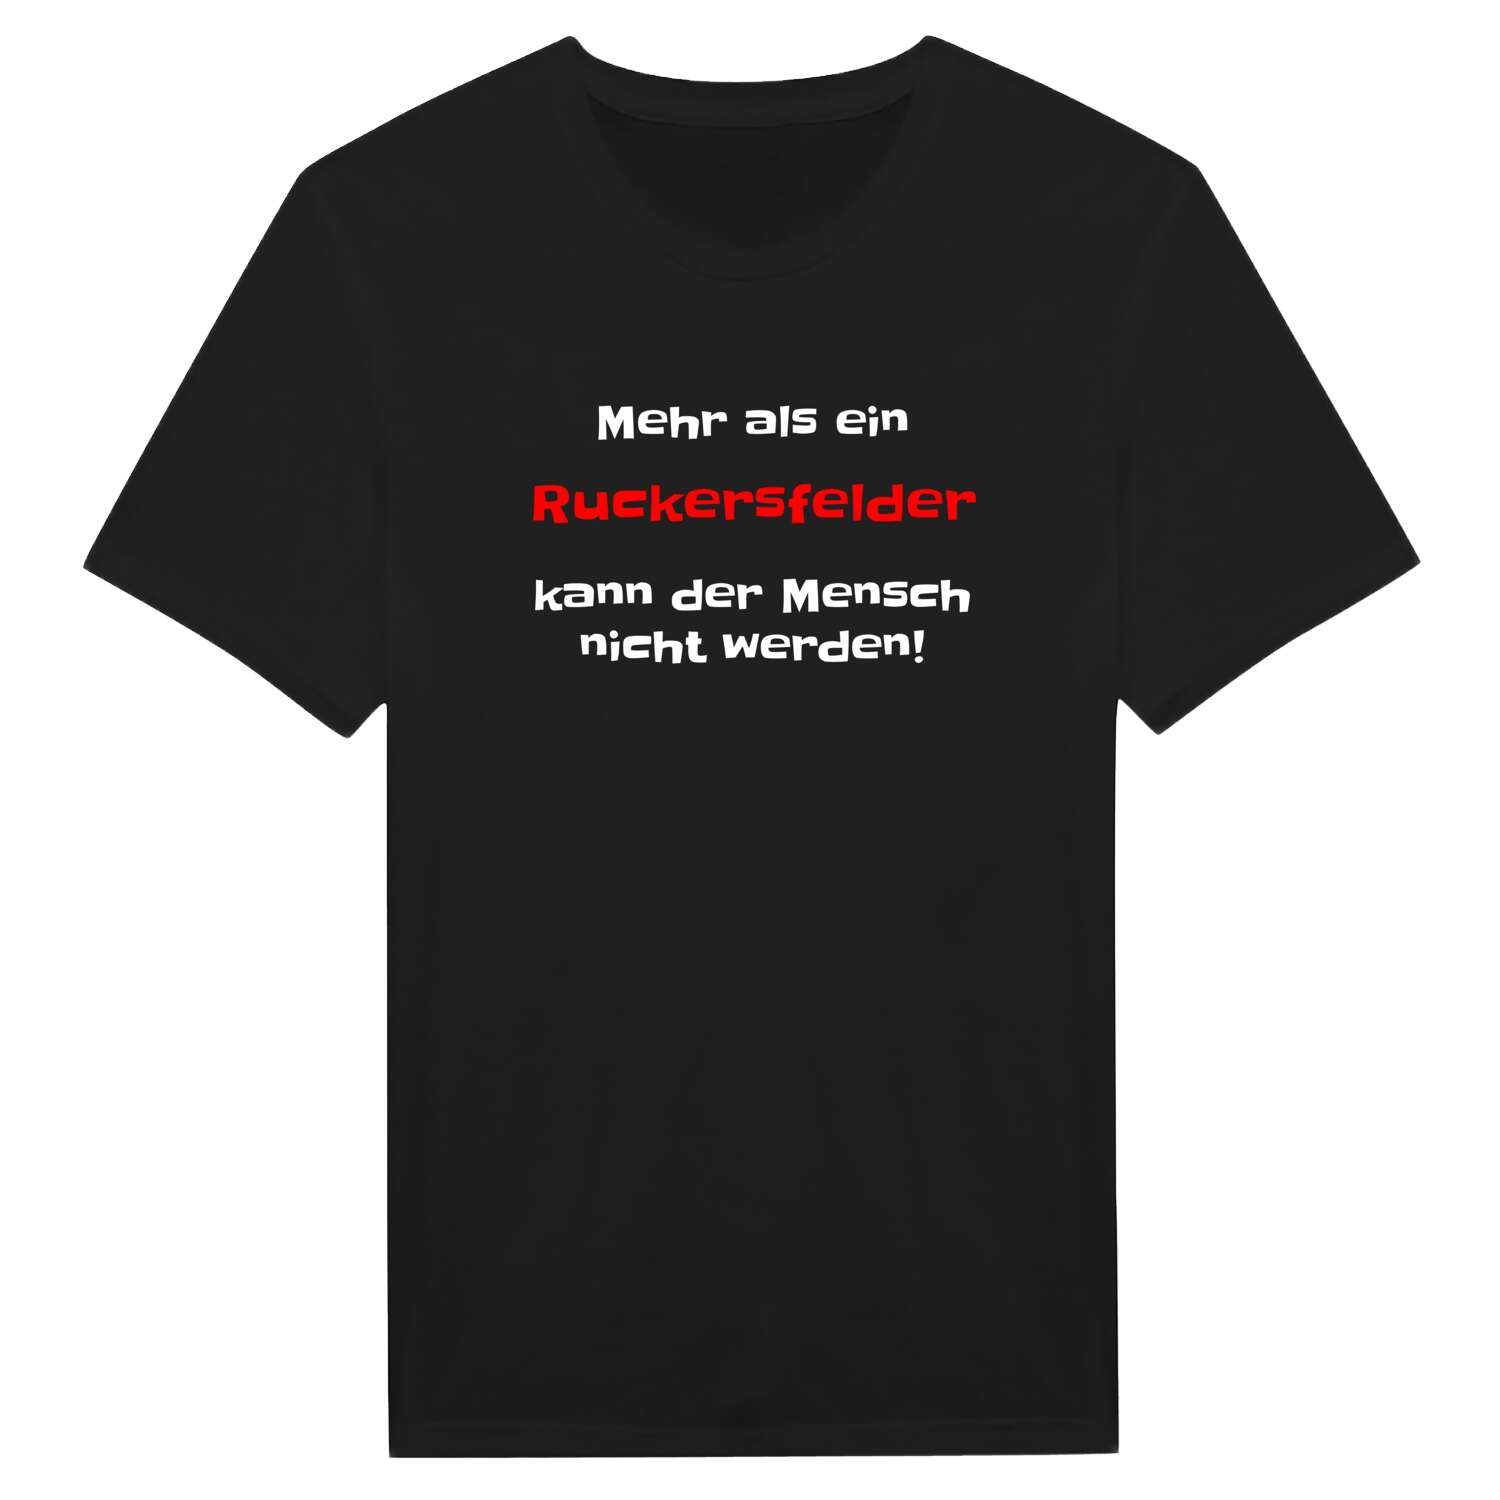 Ruckersfeld T-Shirt »Mehr als ein«